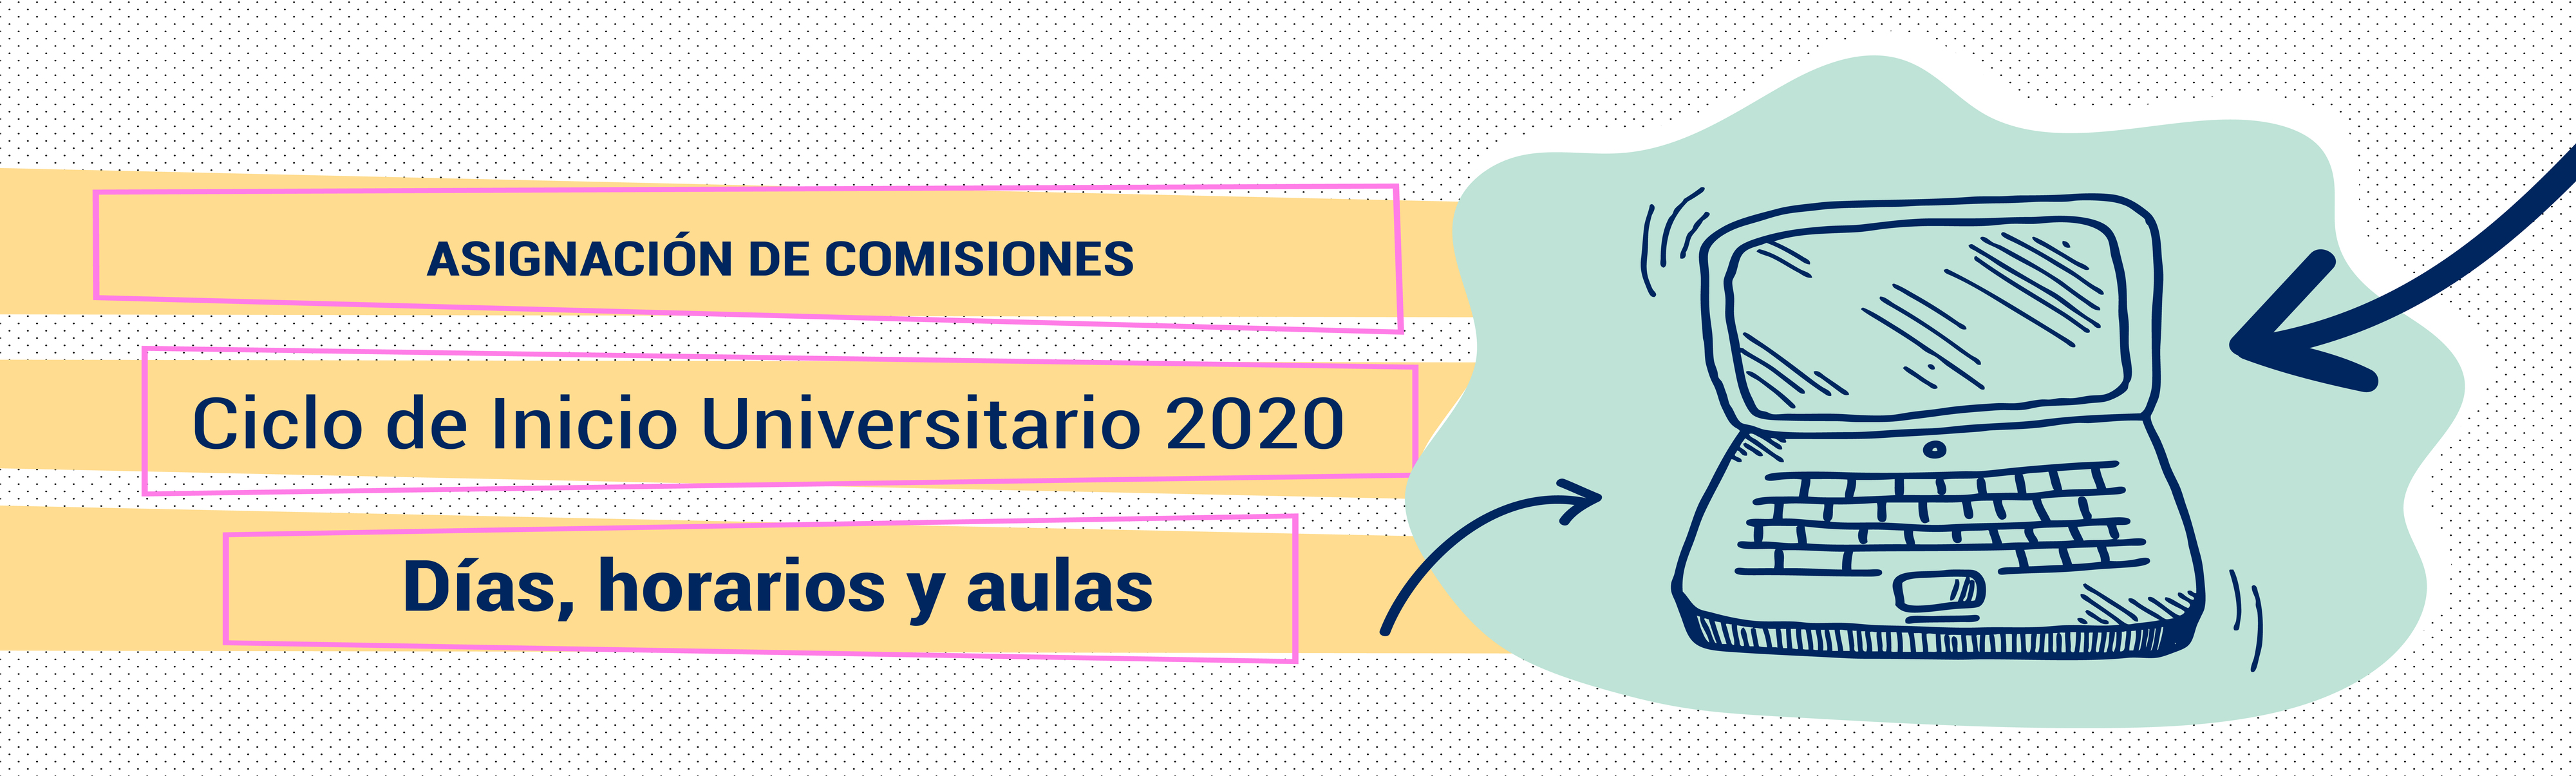 CIU 2020: ASIGNACIÓN DE COMISIONES PARA INGRESANTES